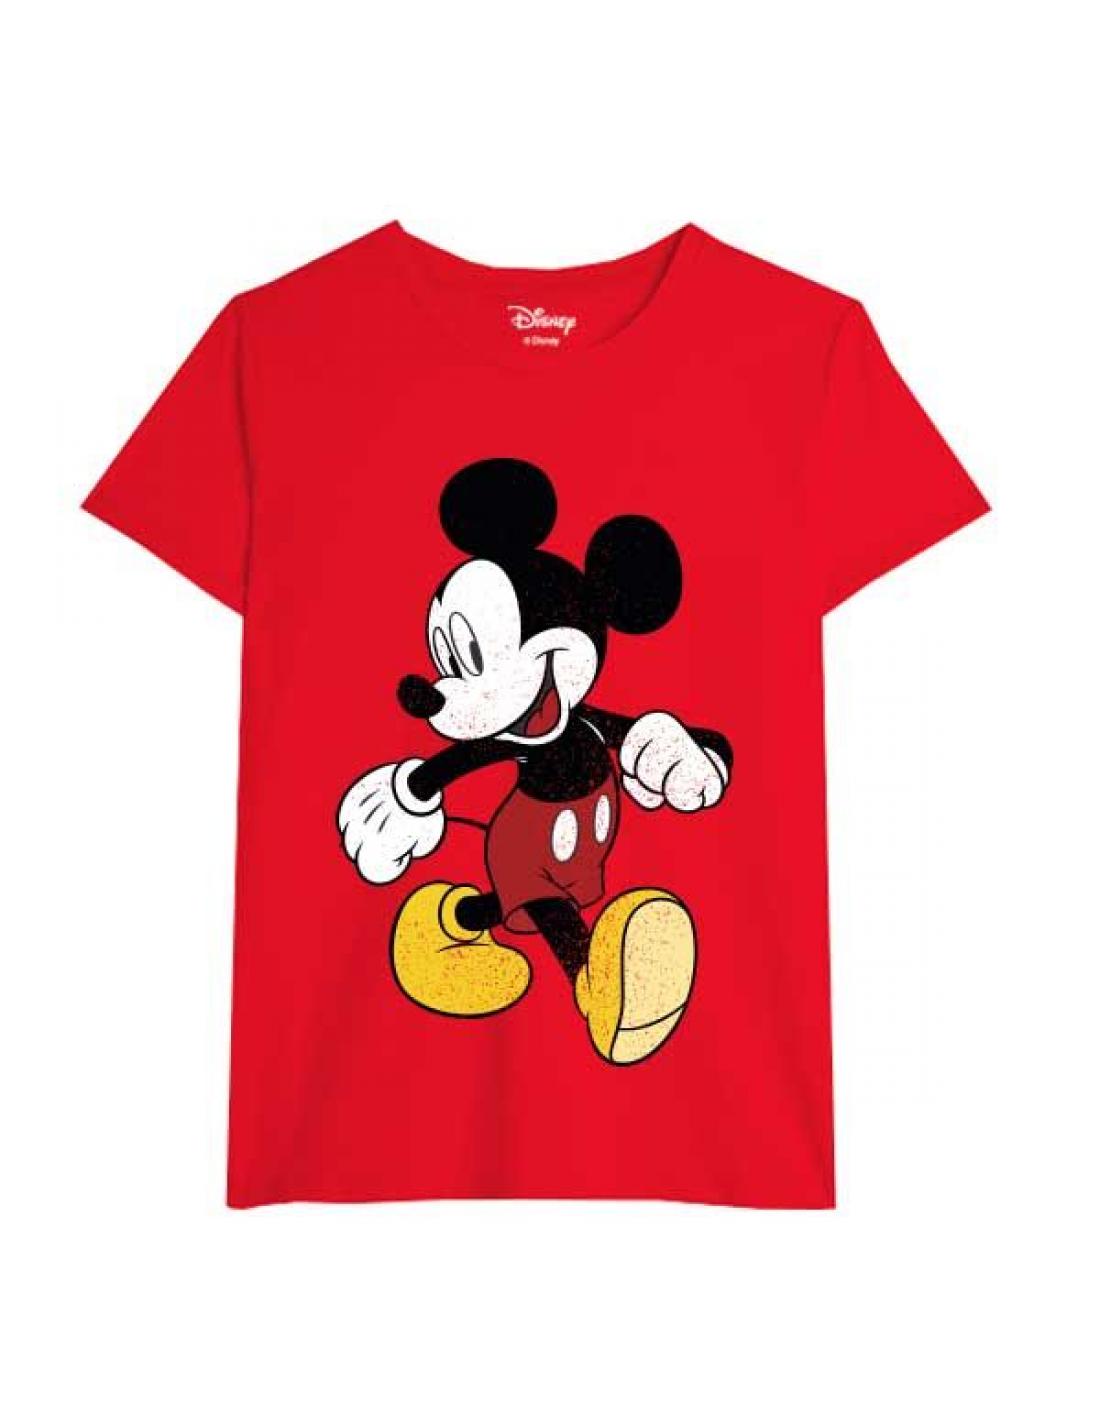 giro Negar Medicina Forense Camiseta Disney Mickey Mouse juvenil/adulto Talla M - Envío GRATIS